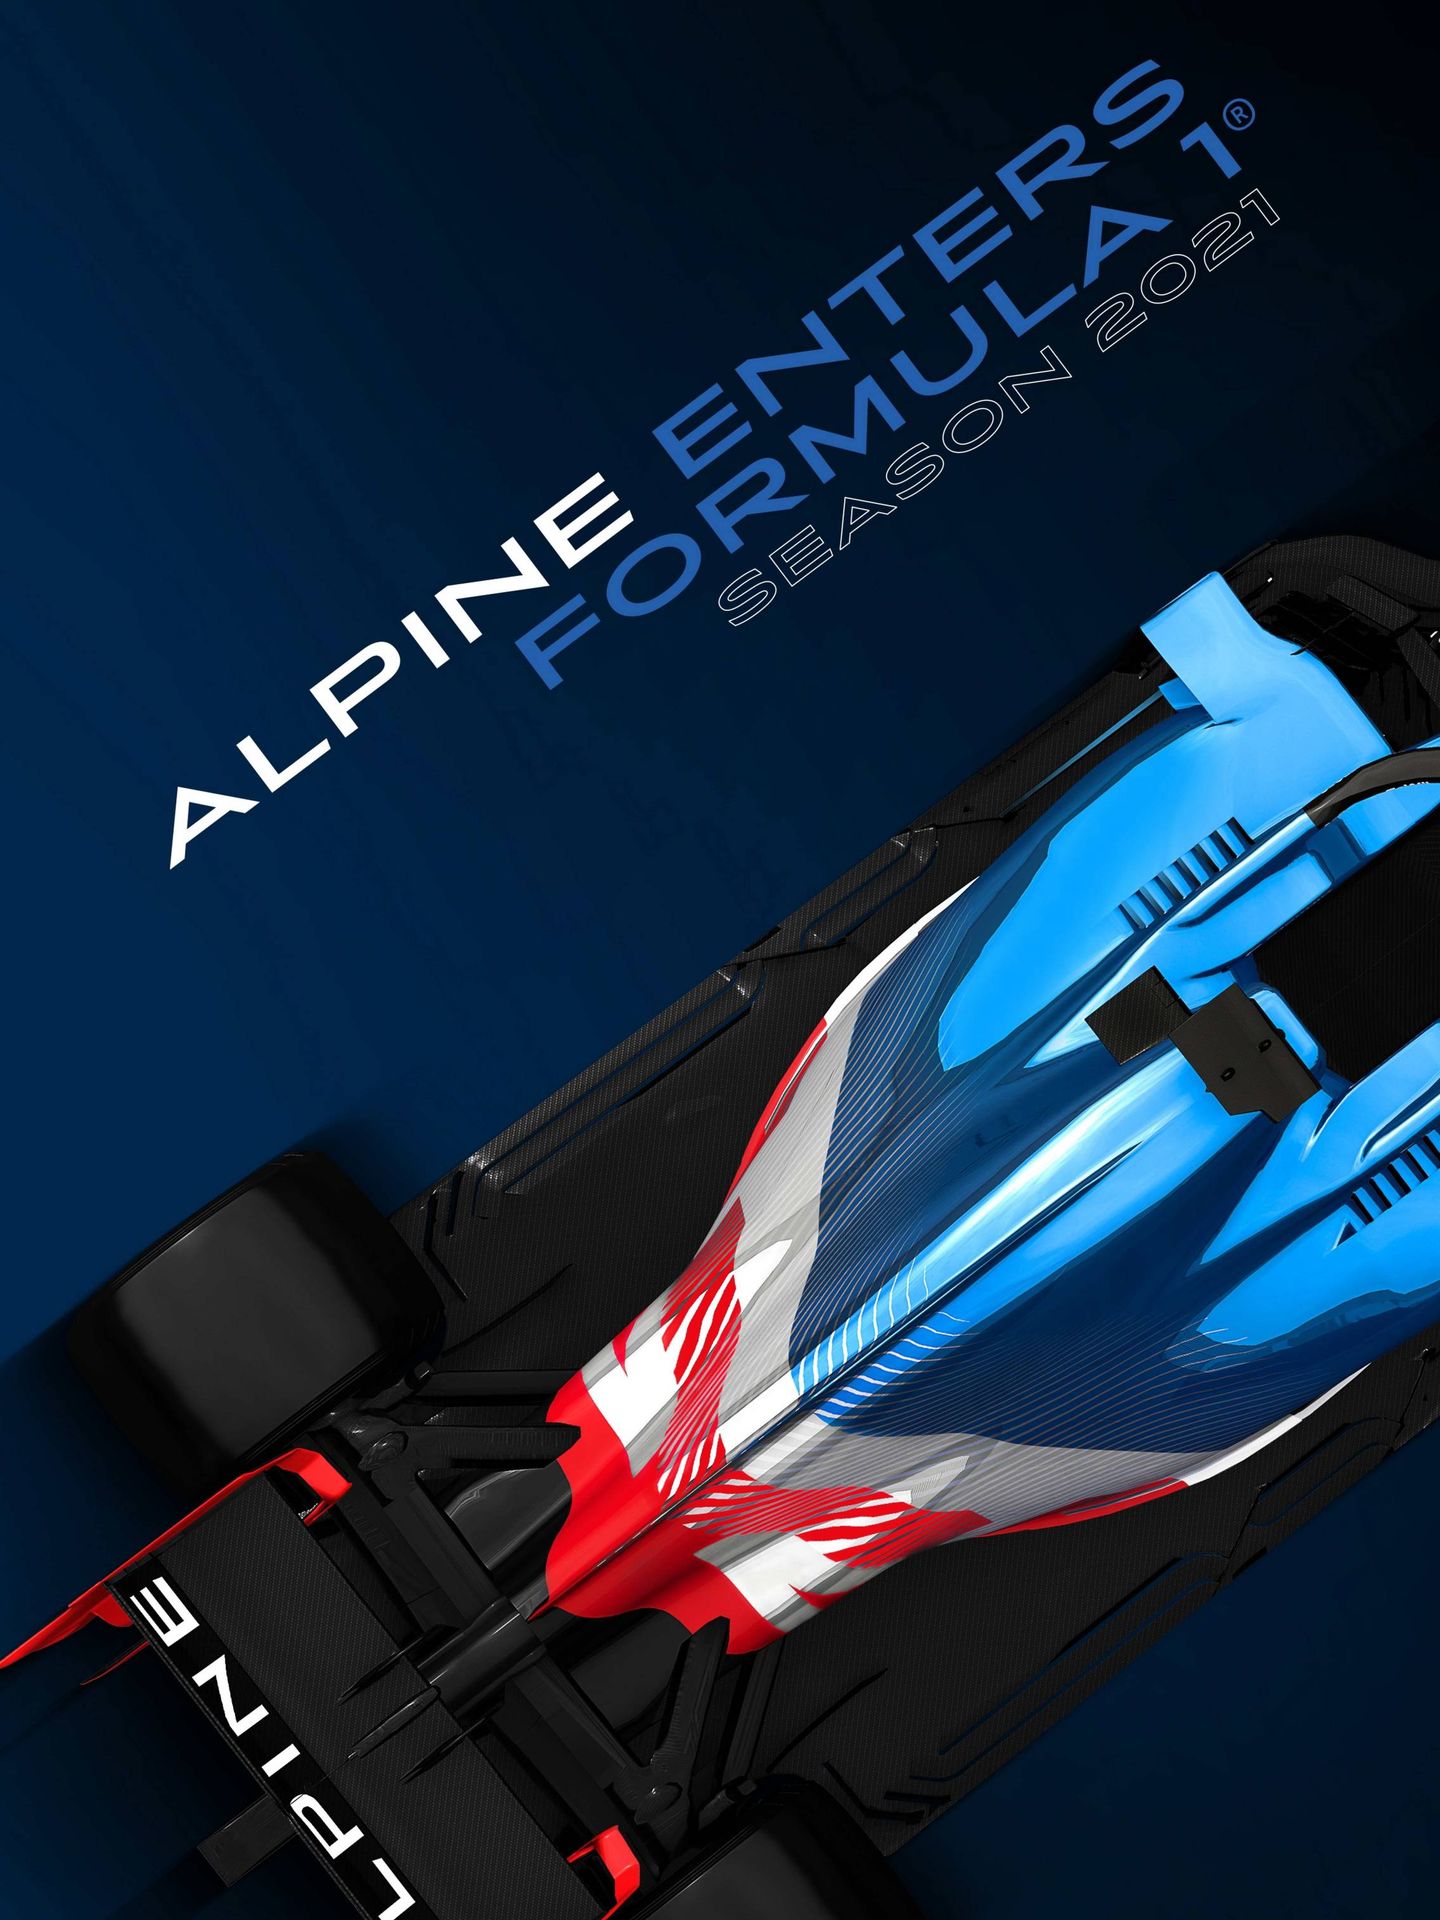 Cartel anunciador del nuevo equipo de fórmula 1, el Alpine F1. 